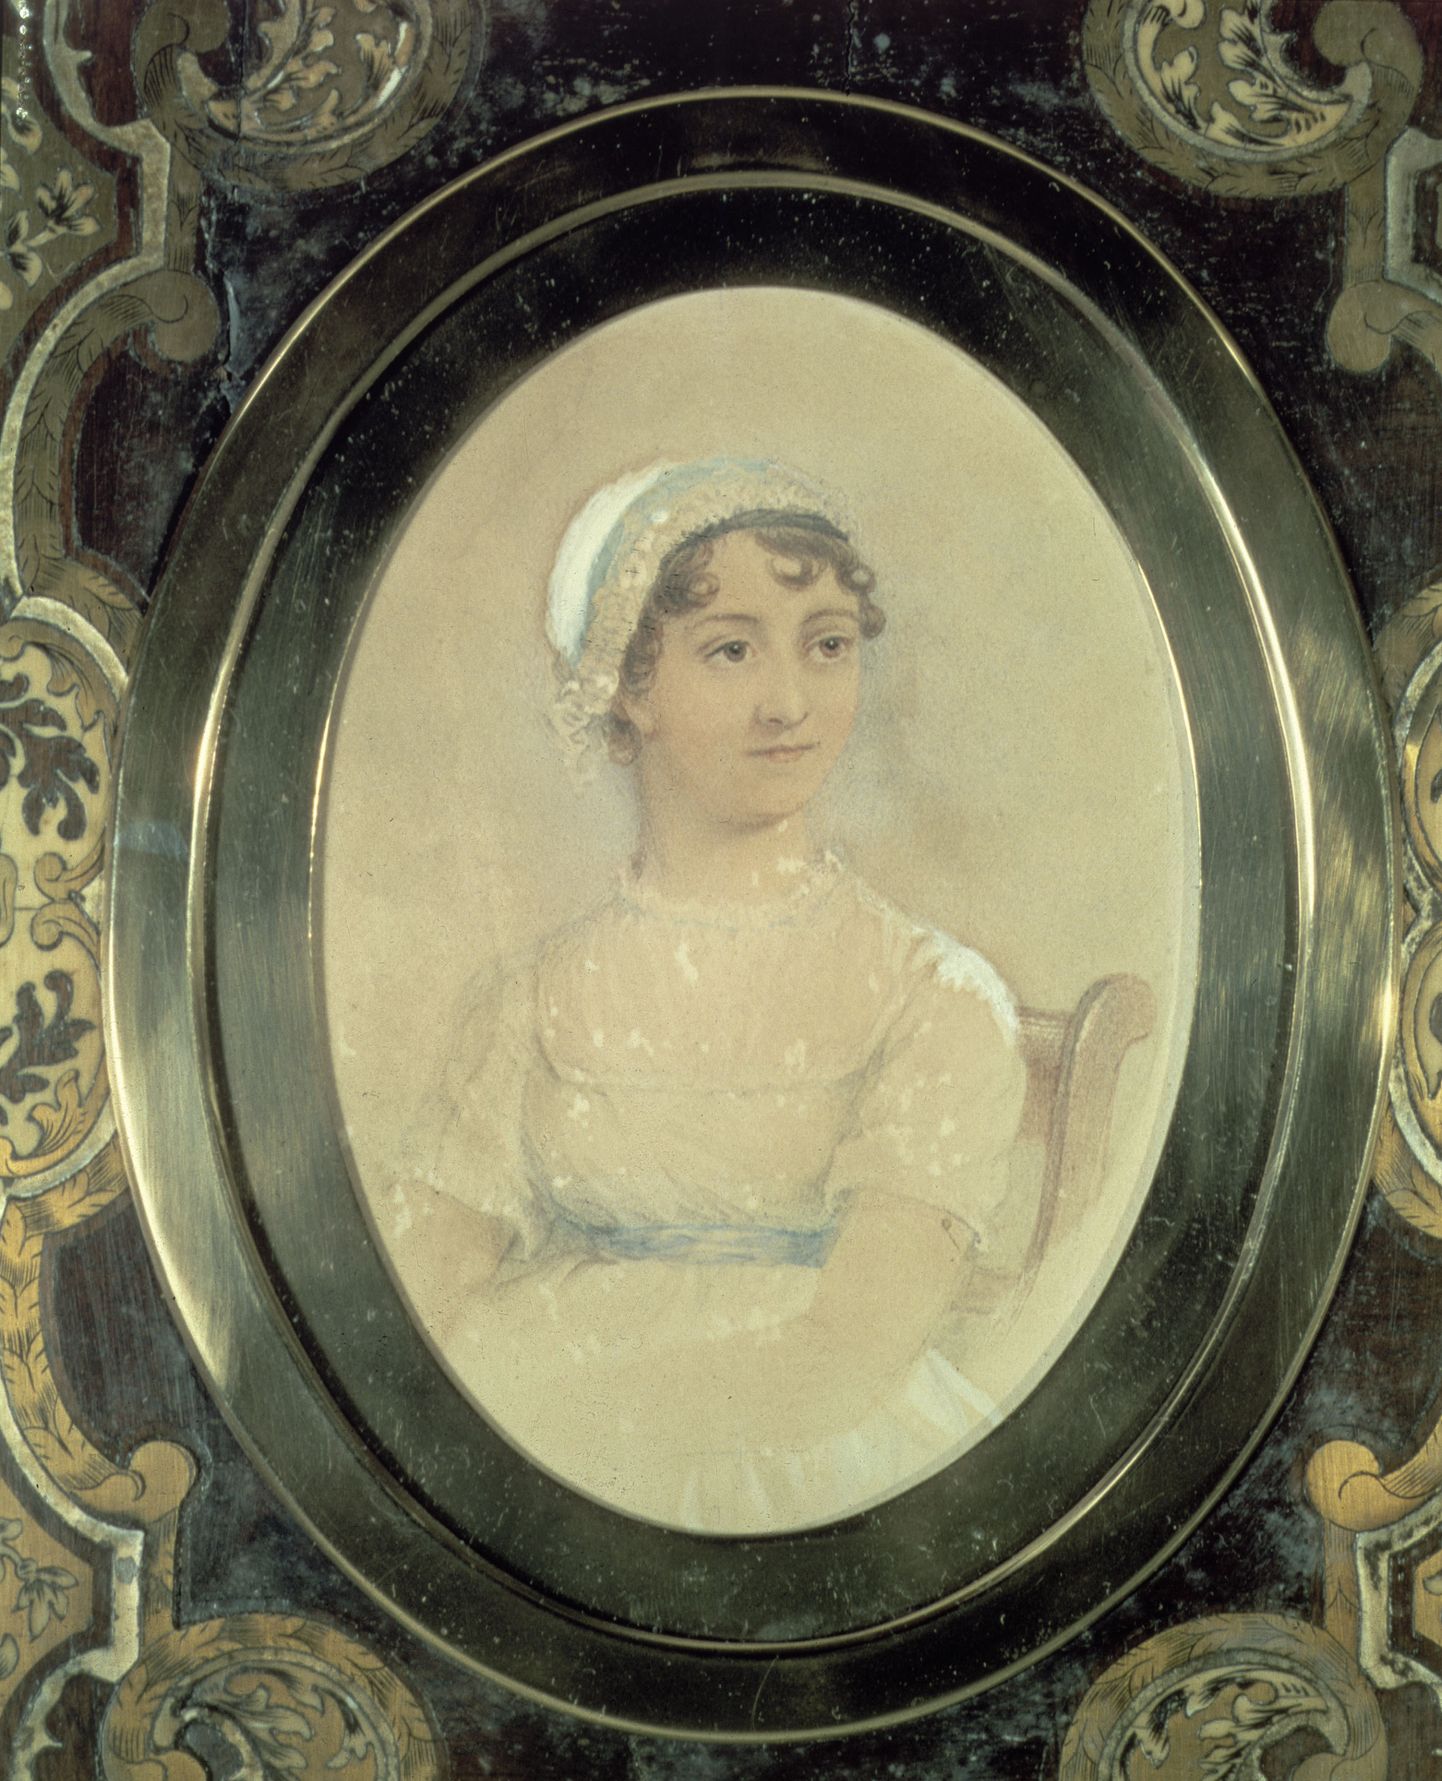 Jane Austen.